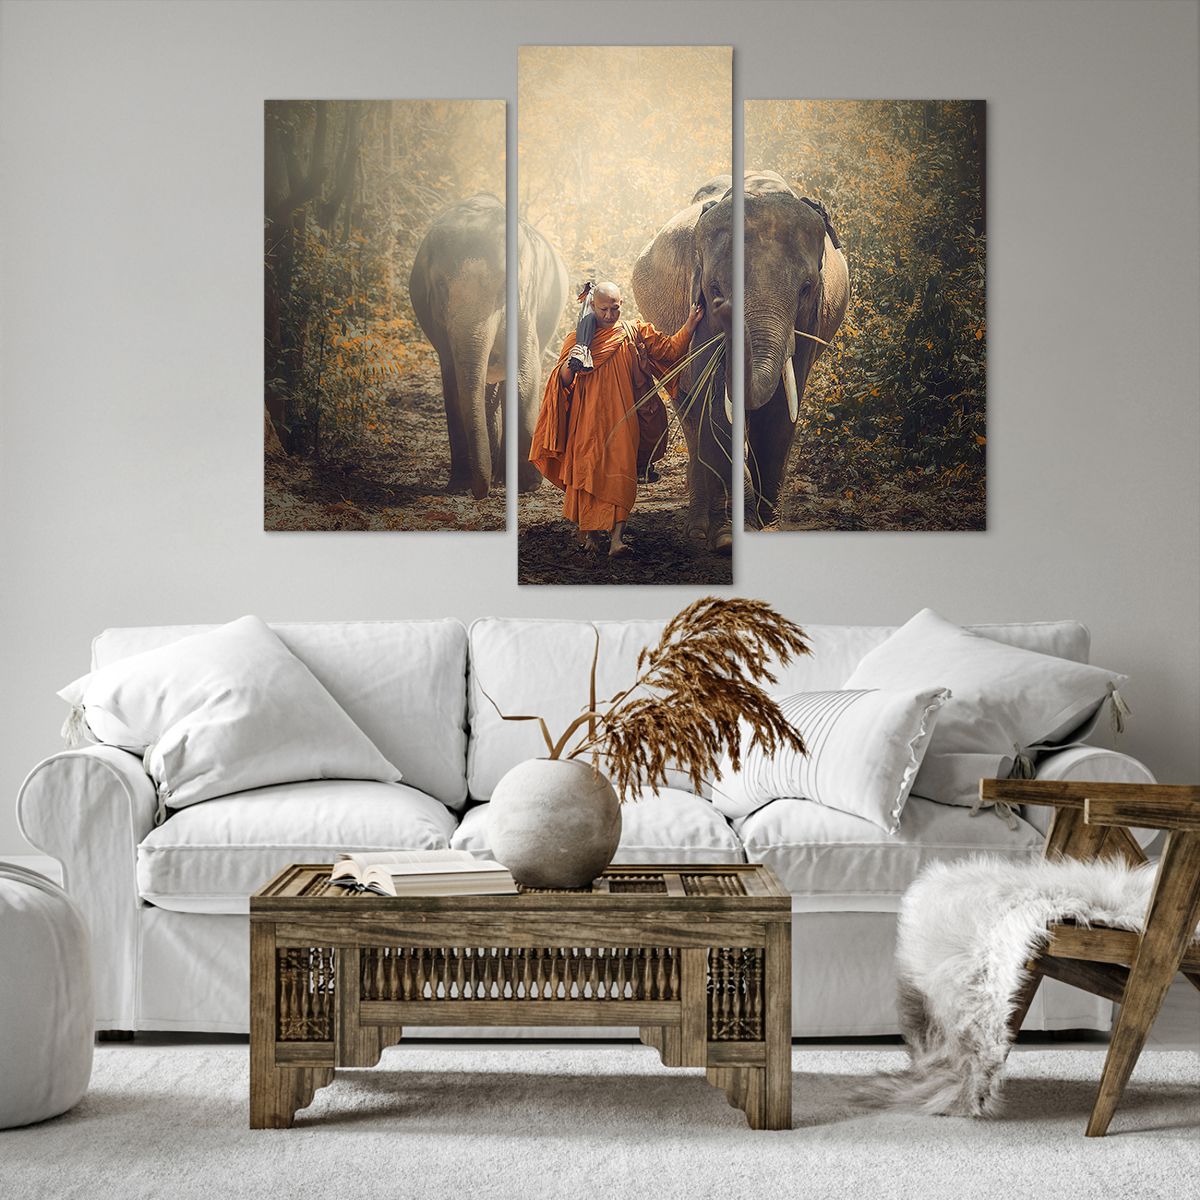 Obrazy na płótnie Azja, Obrazy na płótnie Słoń, Obrazy na płótnie Mnich, Obrazy na płótnie Dżungla, Obrazy na płótnie Buddyzm